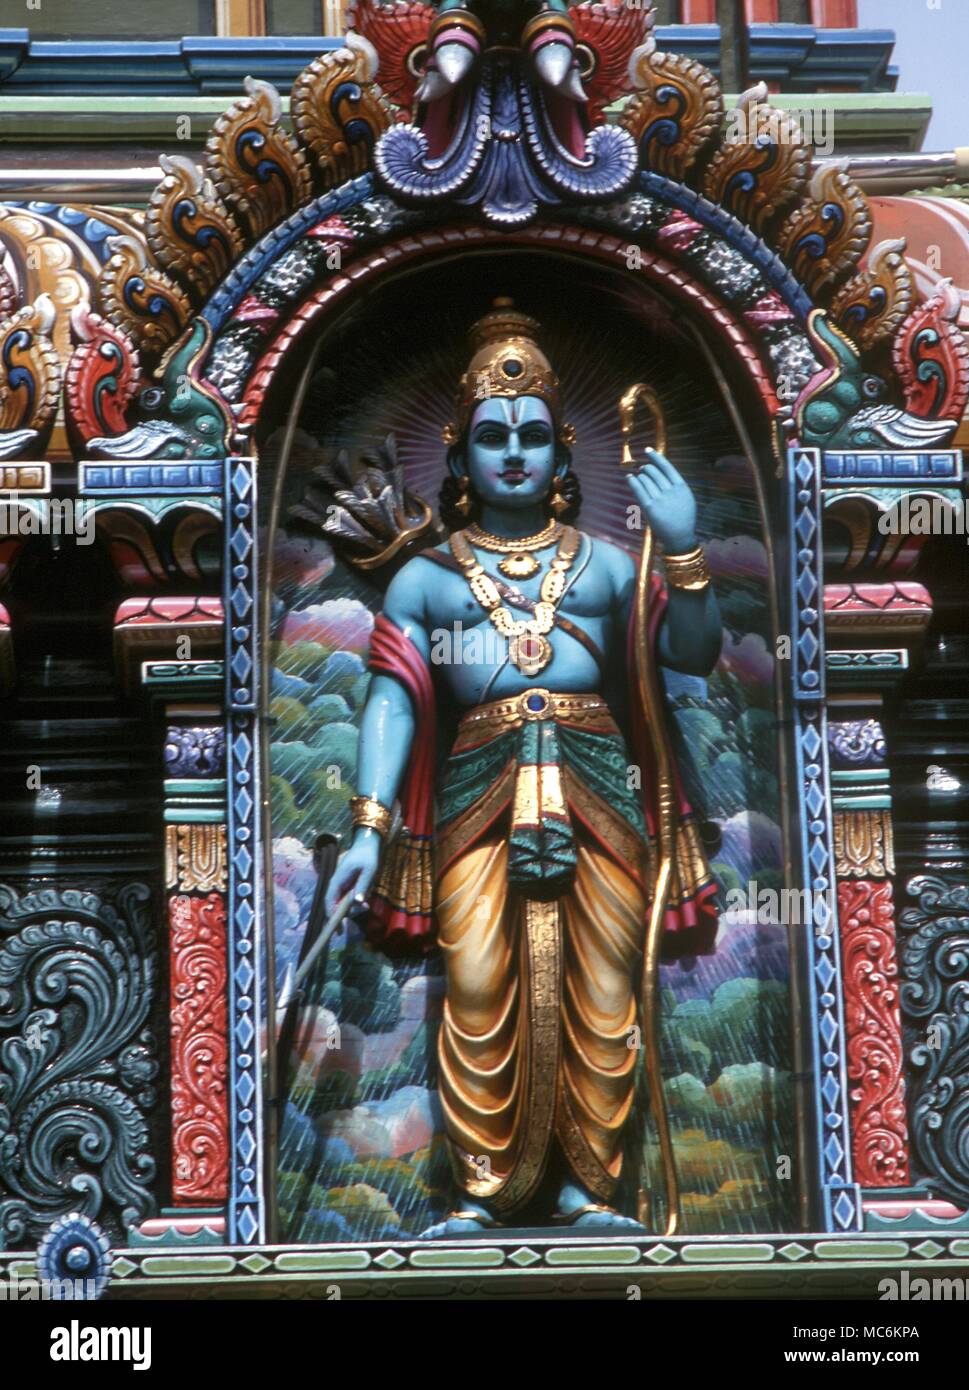 Hindu Mythology. Rama with the bow, one of the avatars of Krishna. Hindu temple in Singapore Stock Photo